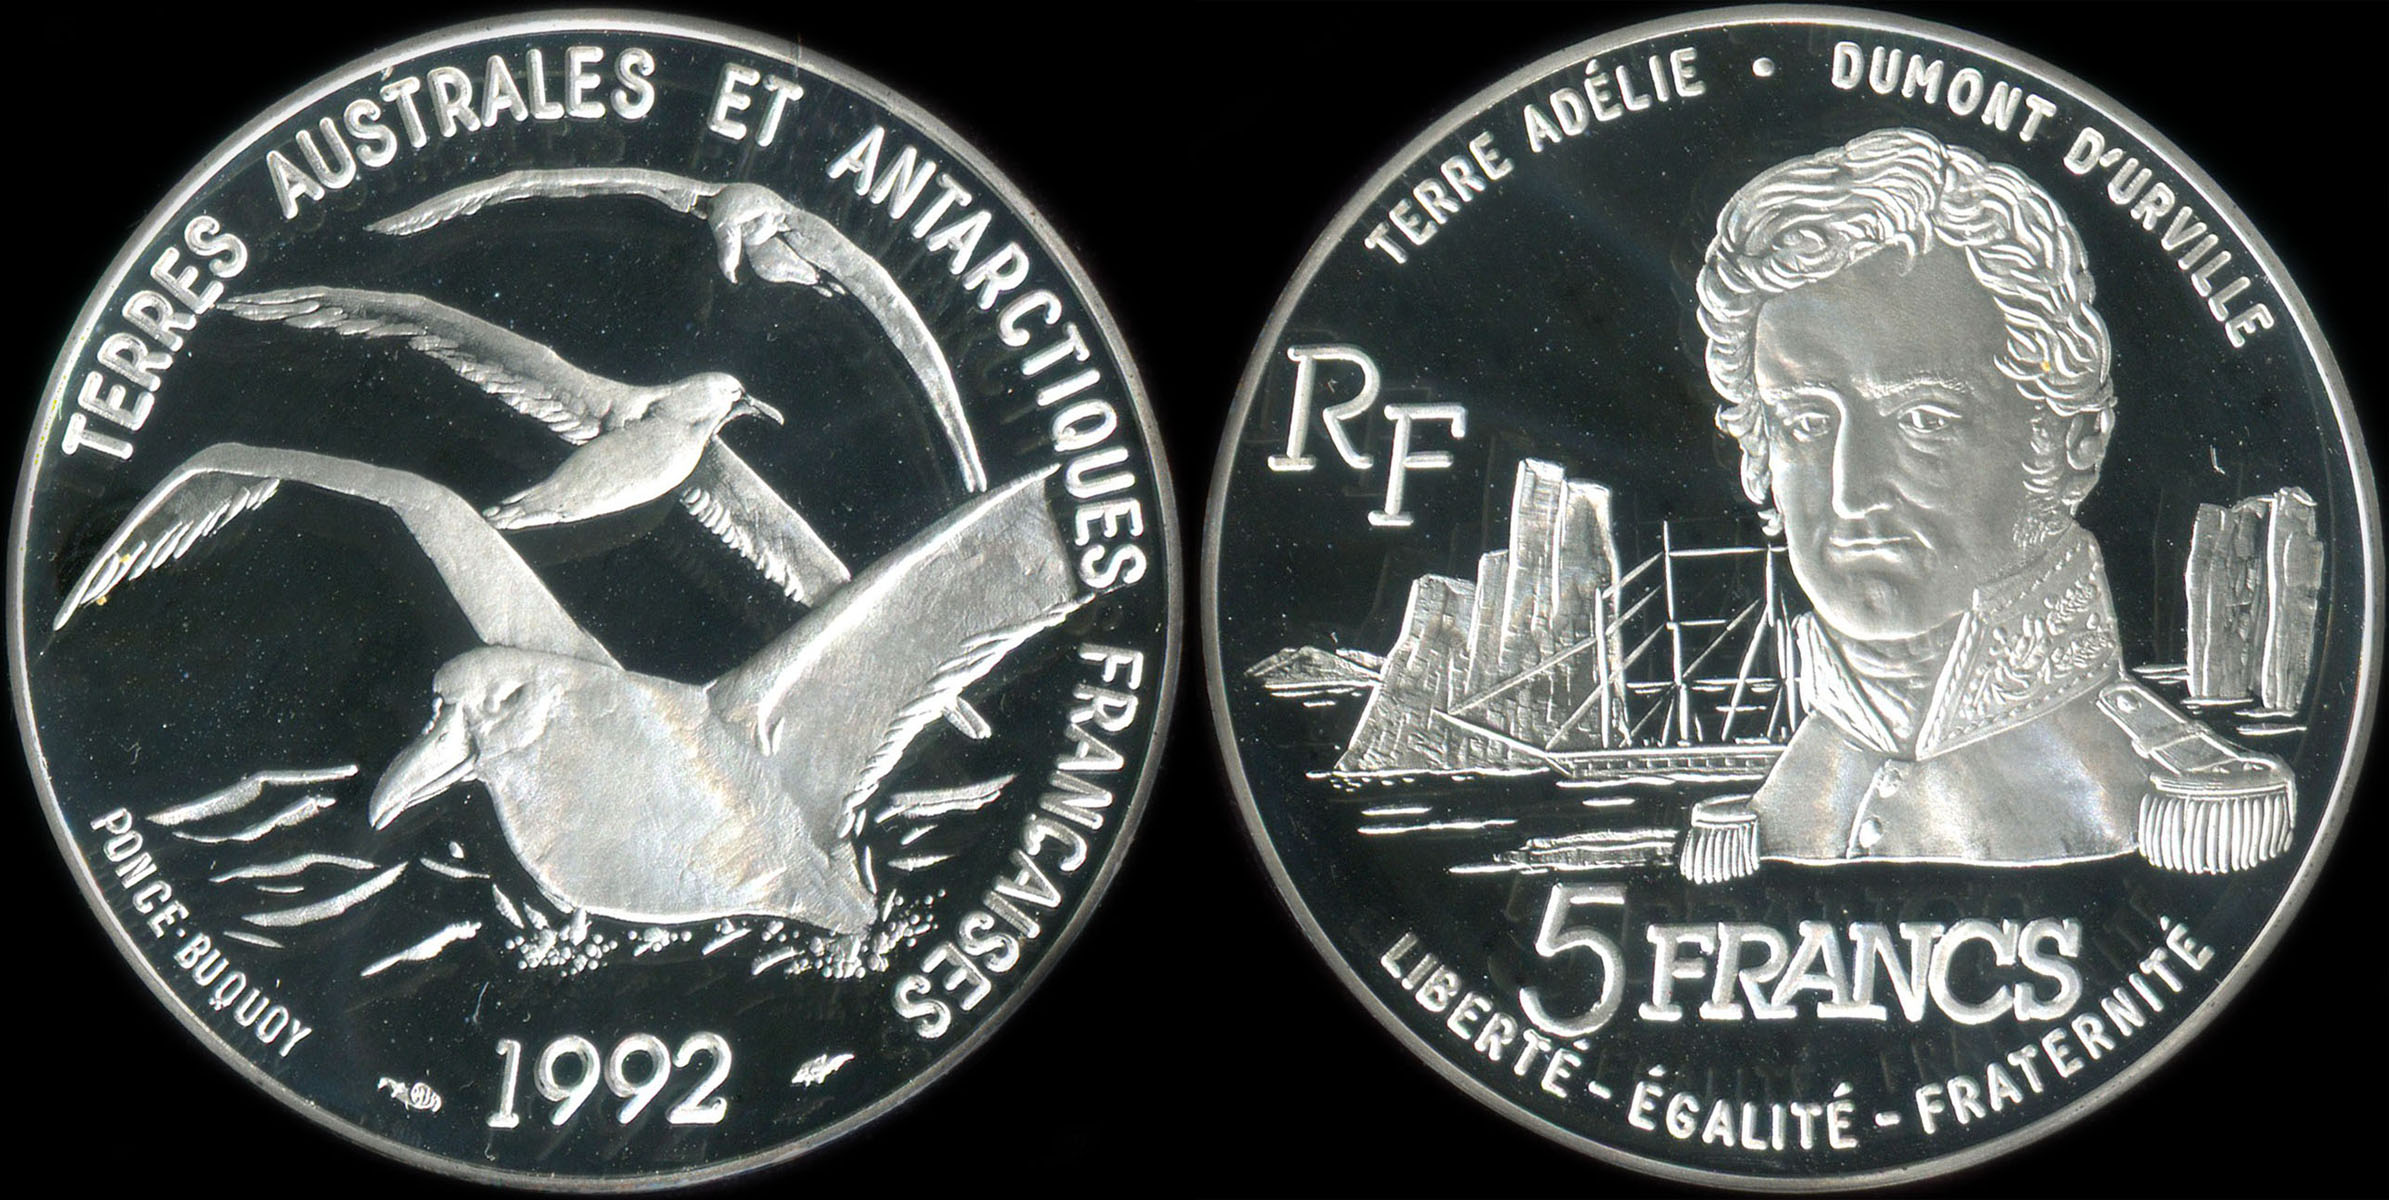 Pice de 5 francs 1992 - Terres Australes et Antarctiques Franaises - Albatros